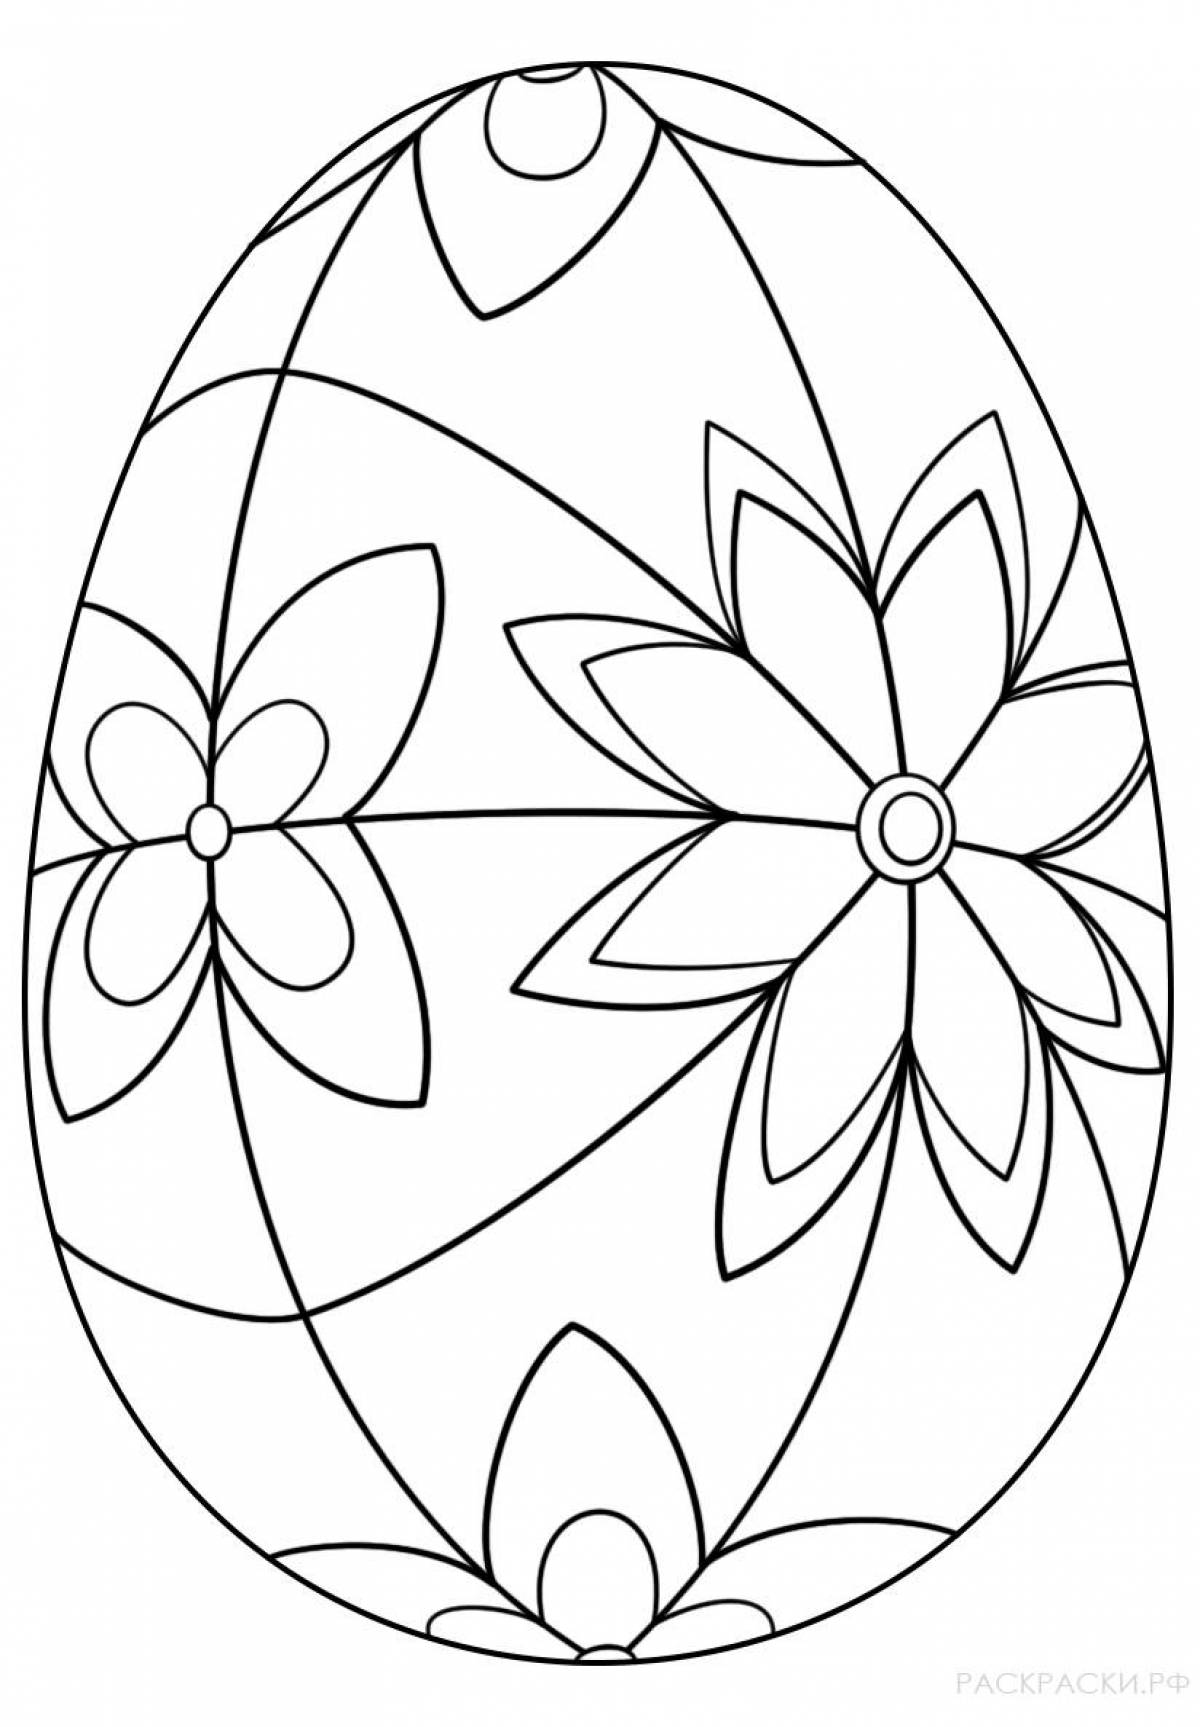 Раскраски Пасхальных яиц — Самая большая коллекция